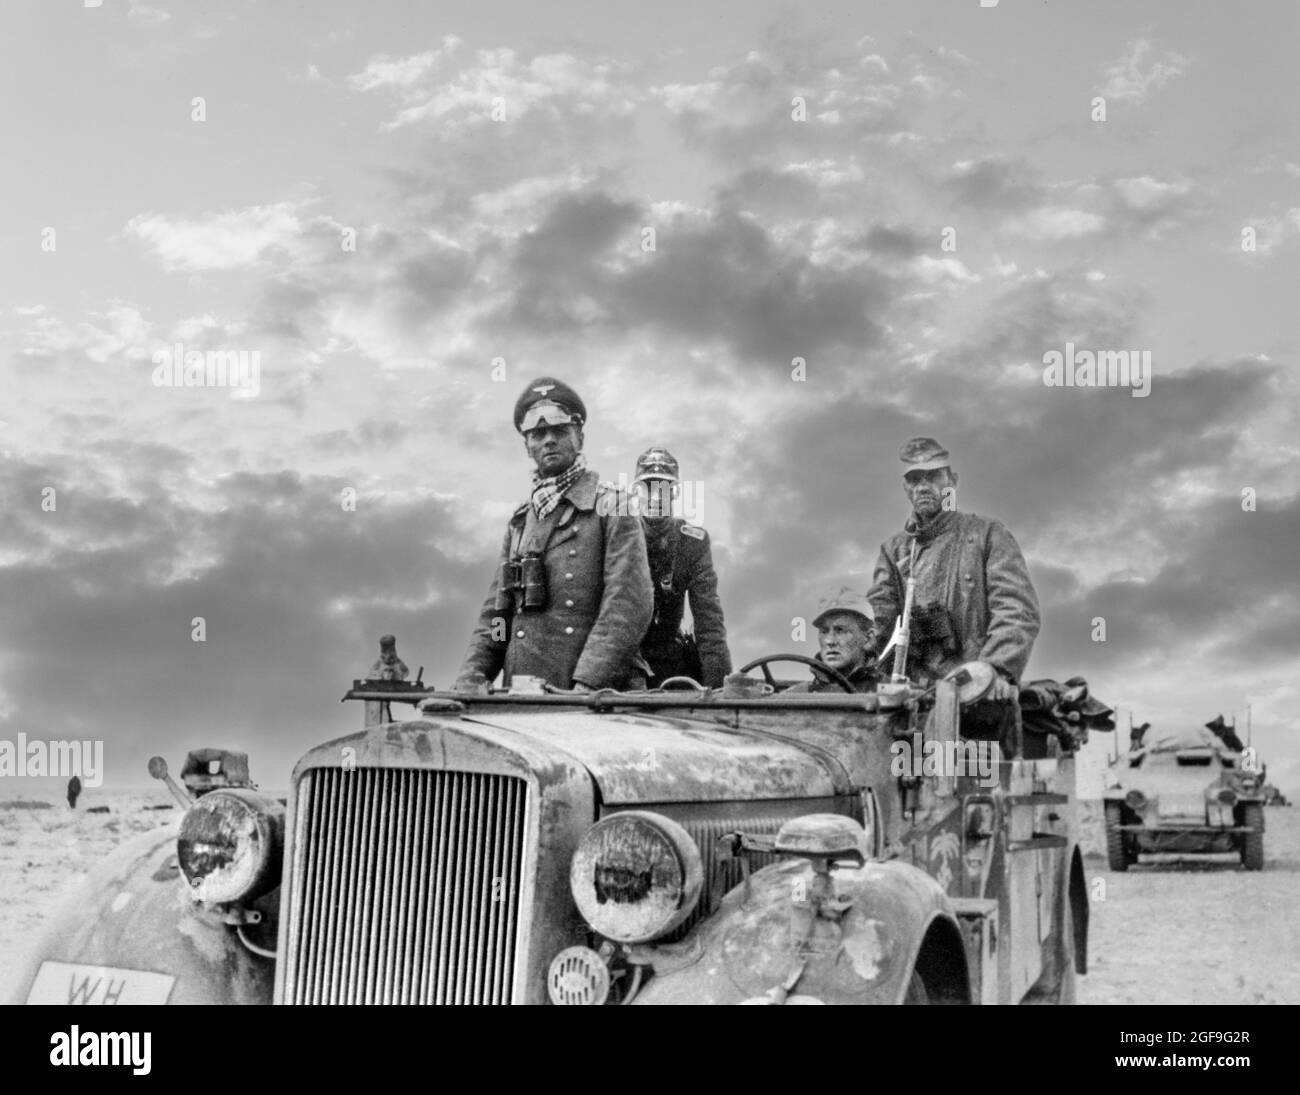 ROMMEL général Rommel ‘ Generalfeldmarschall ‘ maréchal Erwin Rommel en uniforme avec des jumelles et une visière de désert, debout dans un véhicule de jeep de garde-désert ouvert Afrique du Nord (le renard du désert) WW2 avec la division Panzer de 15th entre Tobruk et Sidi Omar. Libye, Seconde Guerre mondiale de 1941 avec effet de ciel dramatique amélioré derrière Banque D'Images